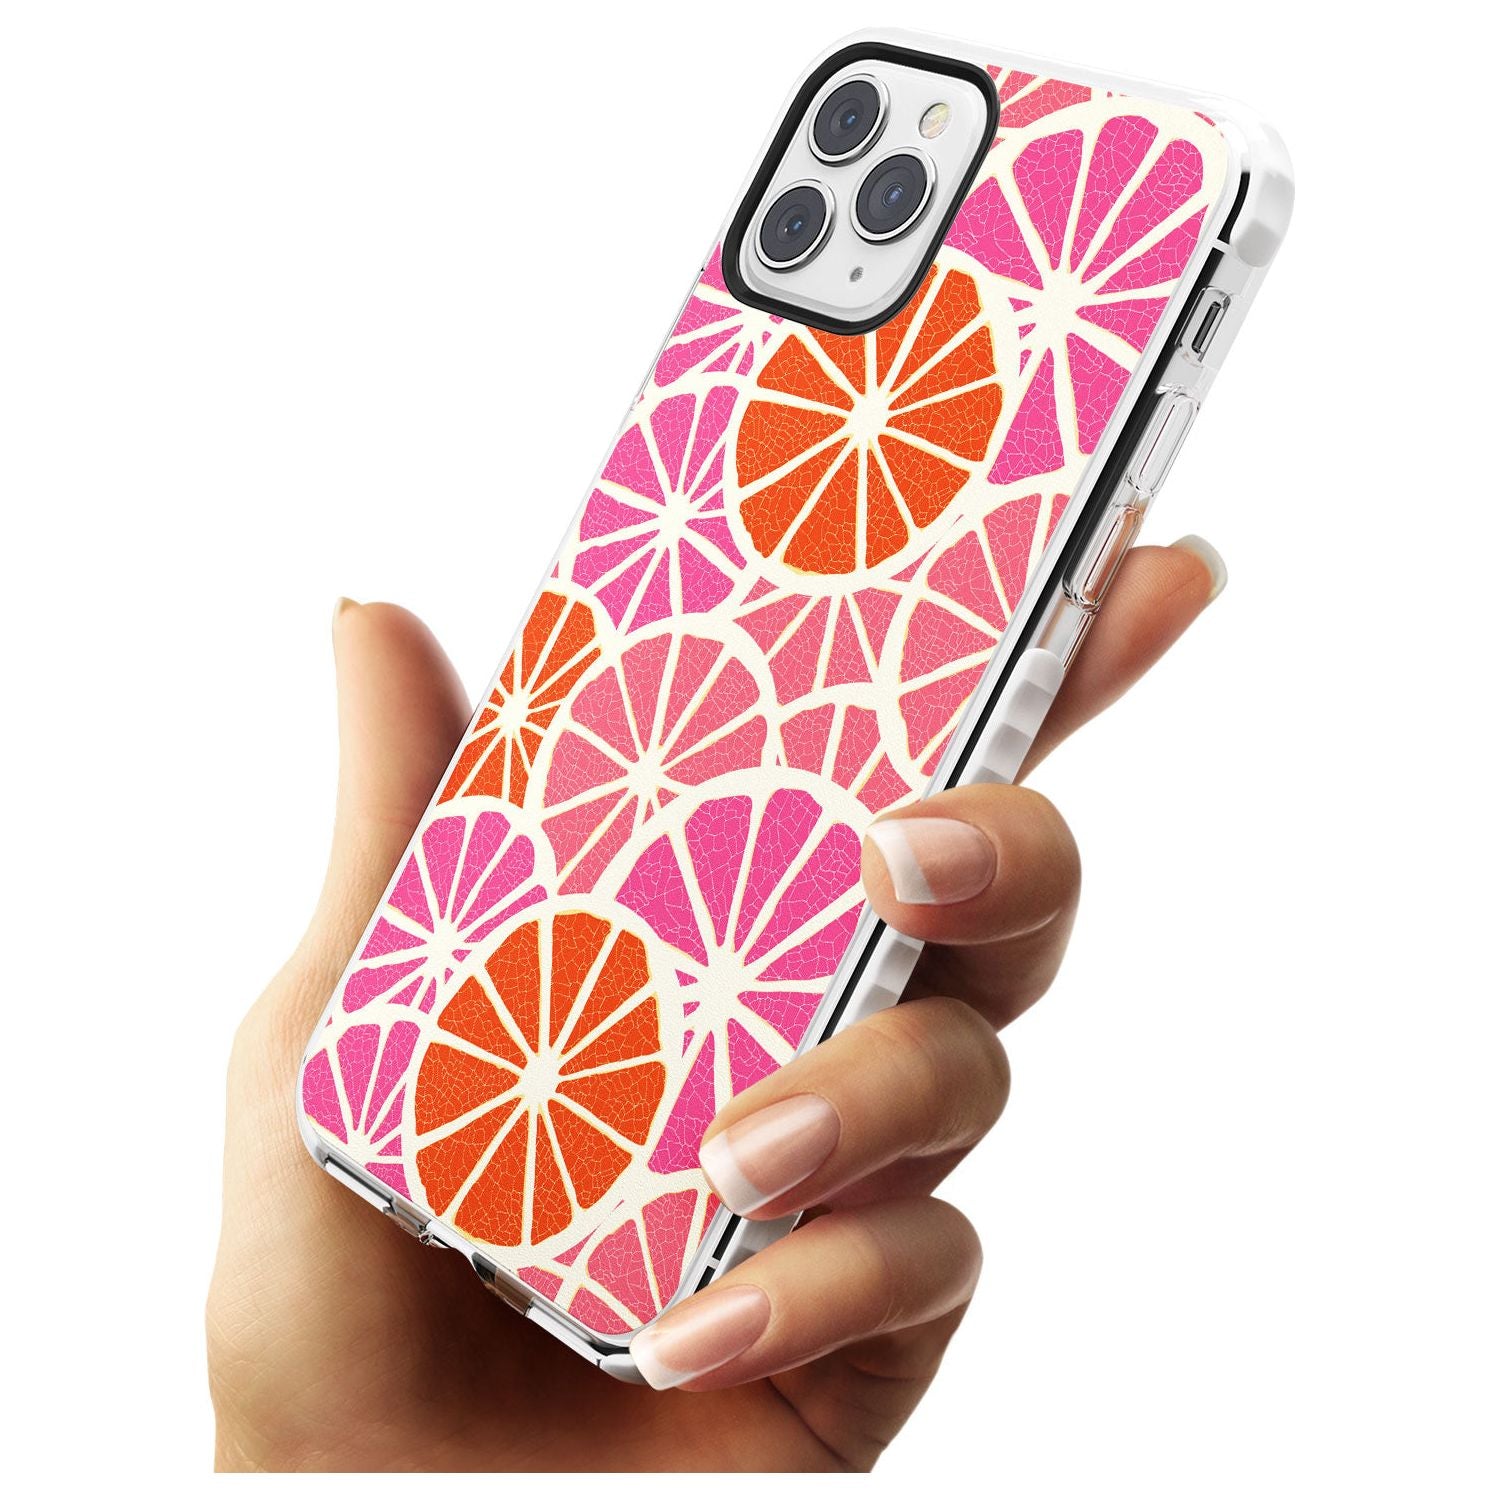 Citrus Slices Slim TPU Phone Case for iPhone 11 Pro Max